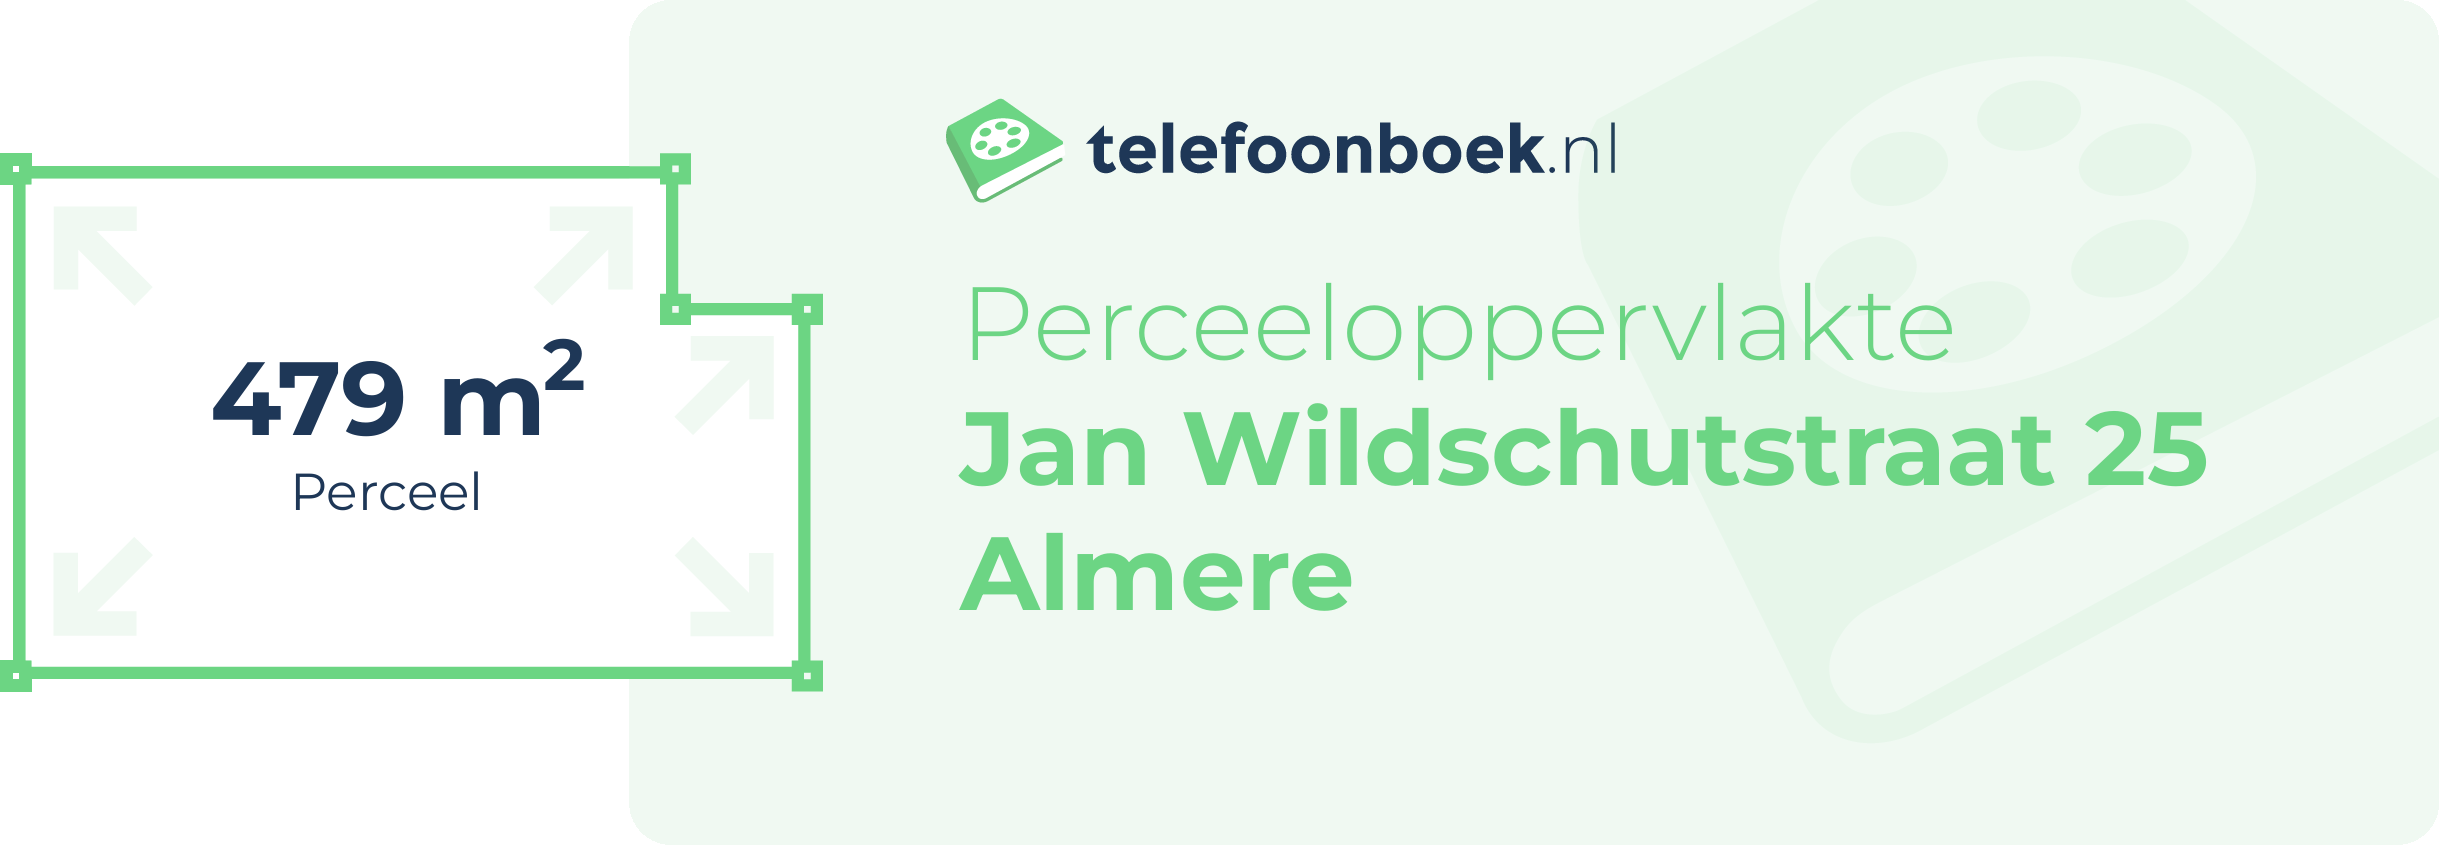 Perceeloppervlakte Jan Wildschutstraat 25 Almere